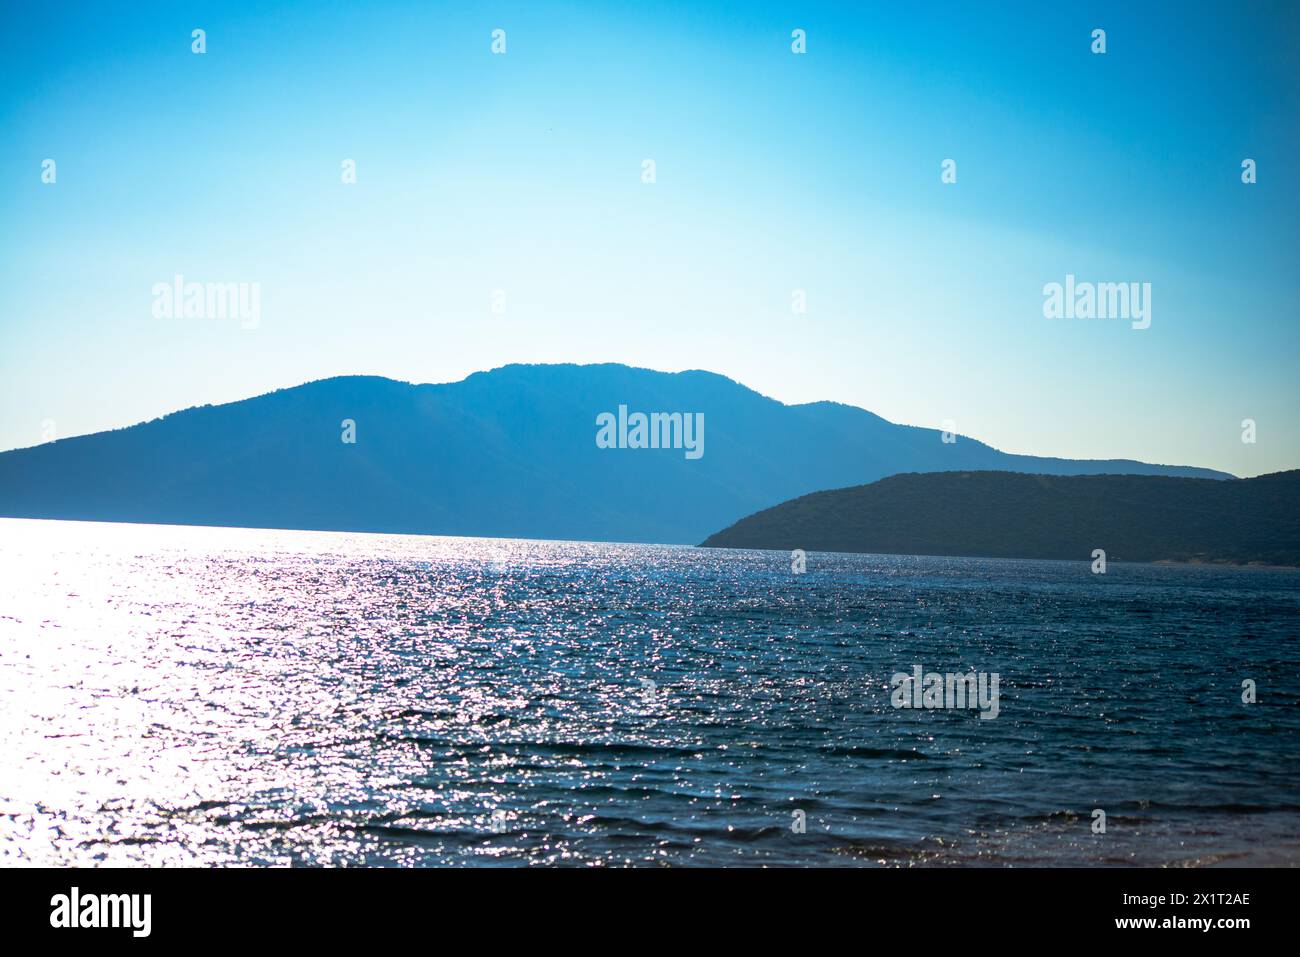 Tauchen Sie ein in die ruhige Schönheit der Küstenzone, wo das ruhige blaue Meer auf die Sandküste trifft. Stockfoto